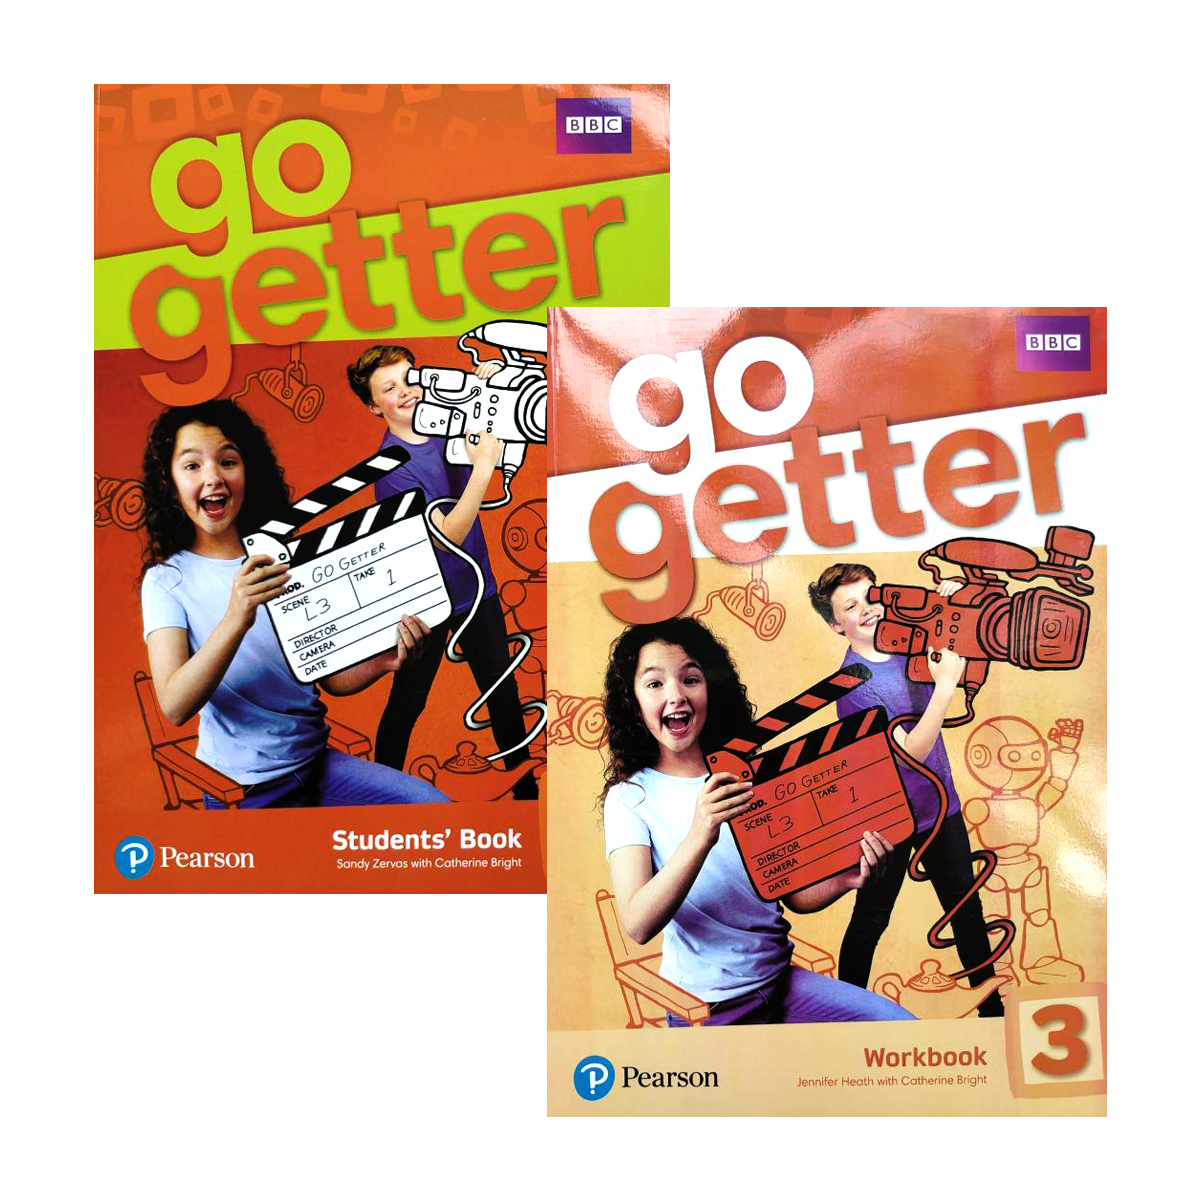 Go getter 3.3. Go Getter учебник. Го геттер 3 воркбук. Go Getter 2 student's book. Go Getter 3 Workbook.